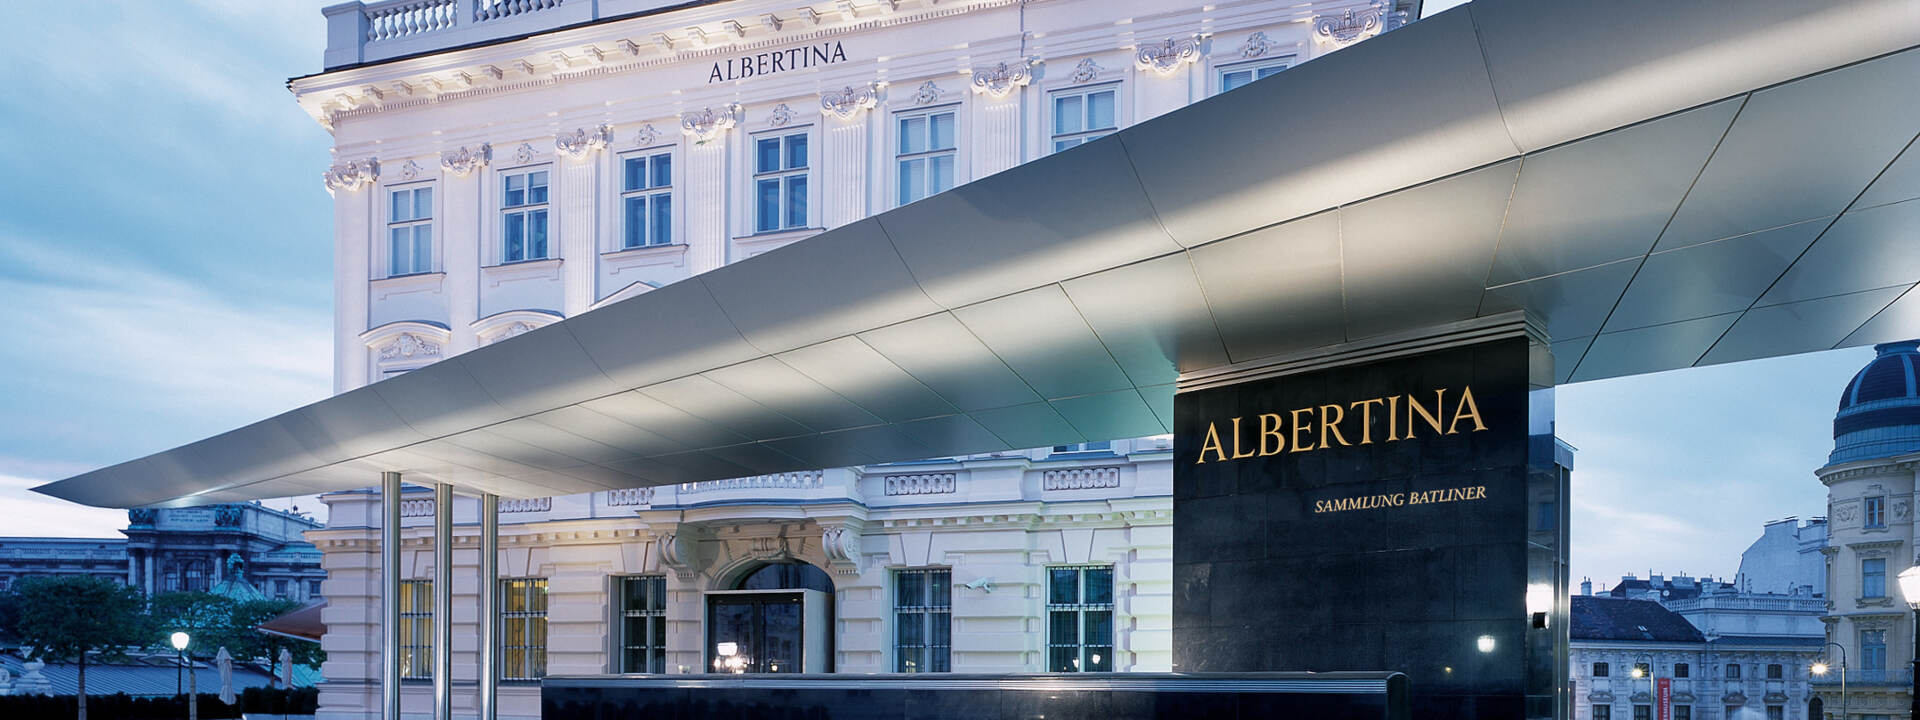 Albertina Wien - exterior view © Harald Eisenberger